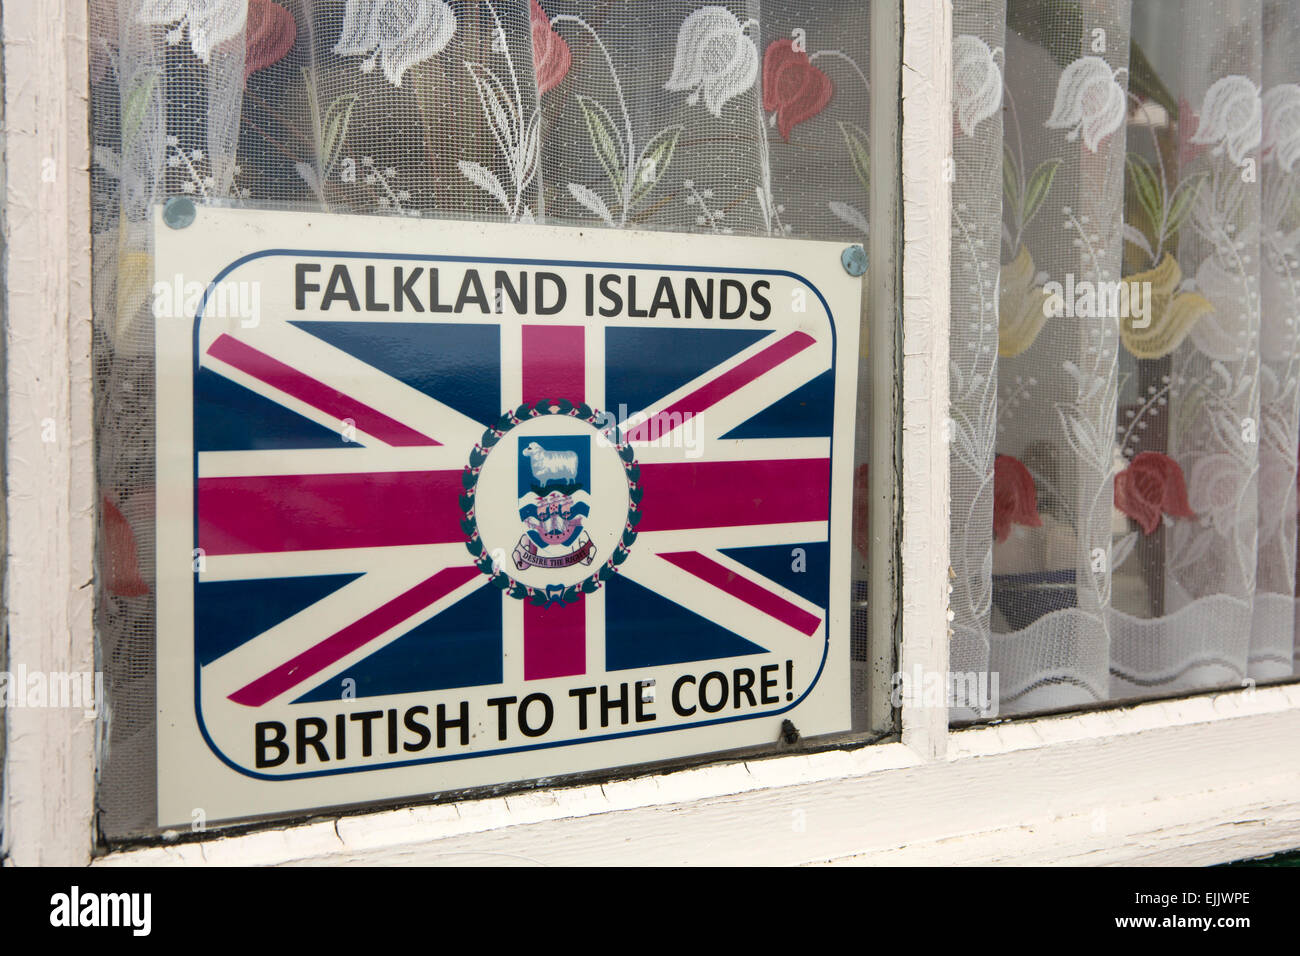 Falkland-Inseln, Port Stanley, Falkland-Inseln britische zum Kern Karte im Haus Fenster Stockfoto